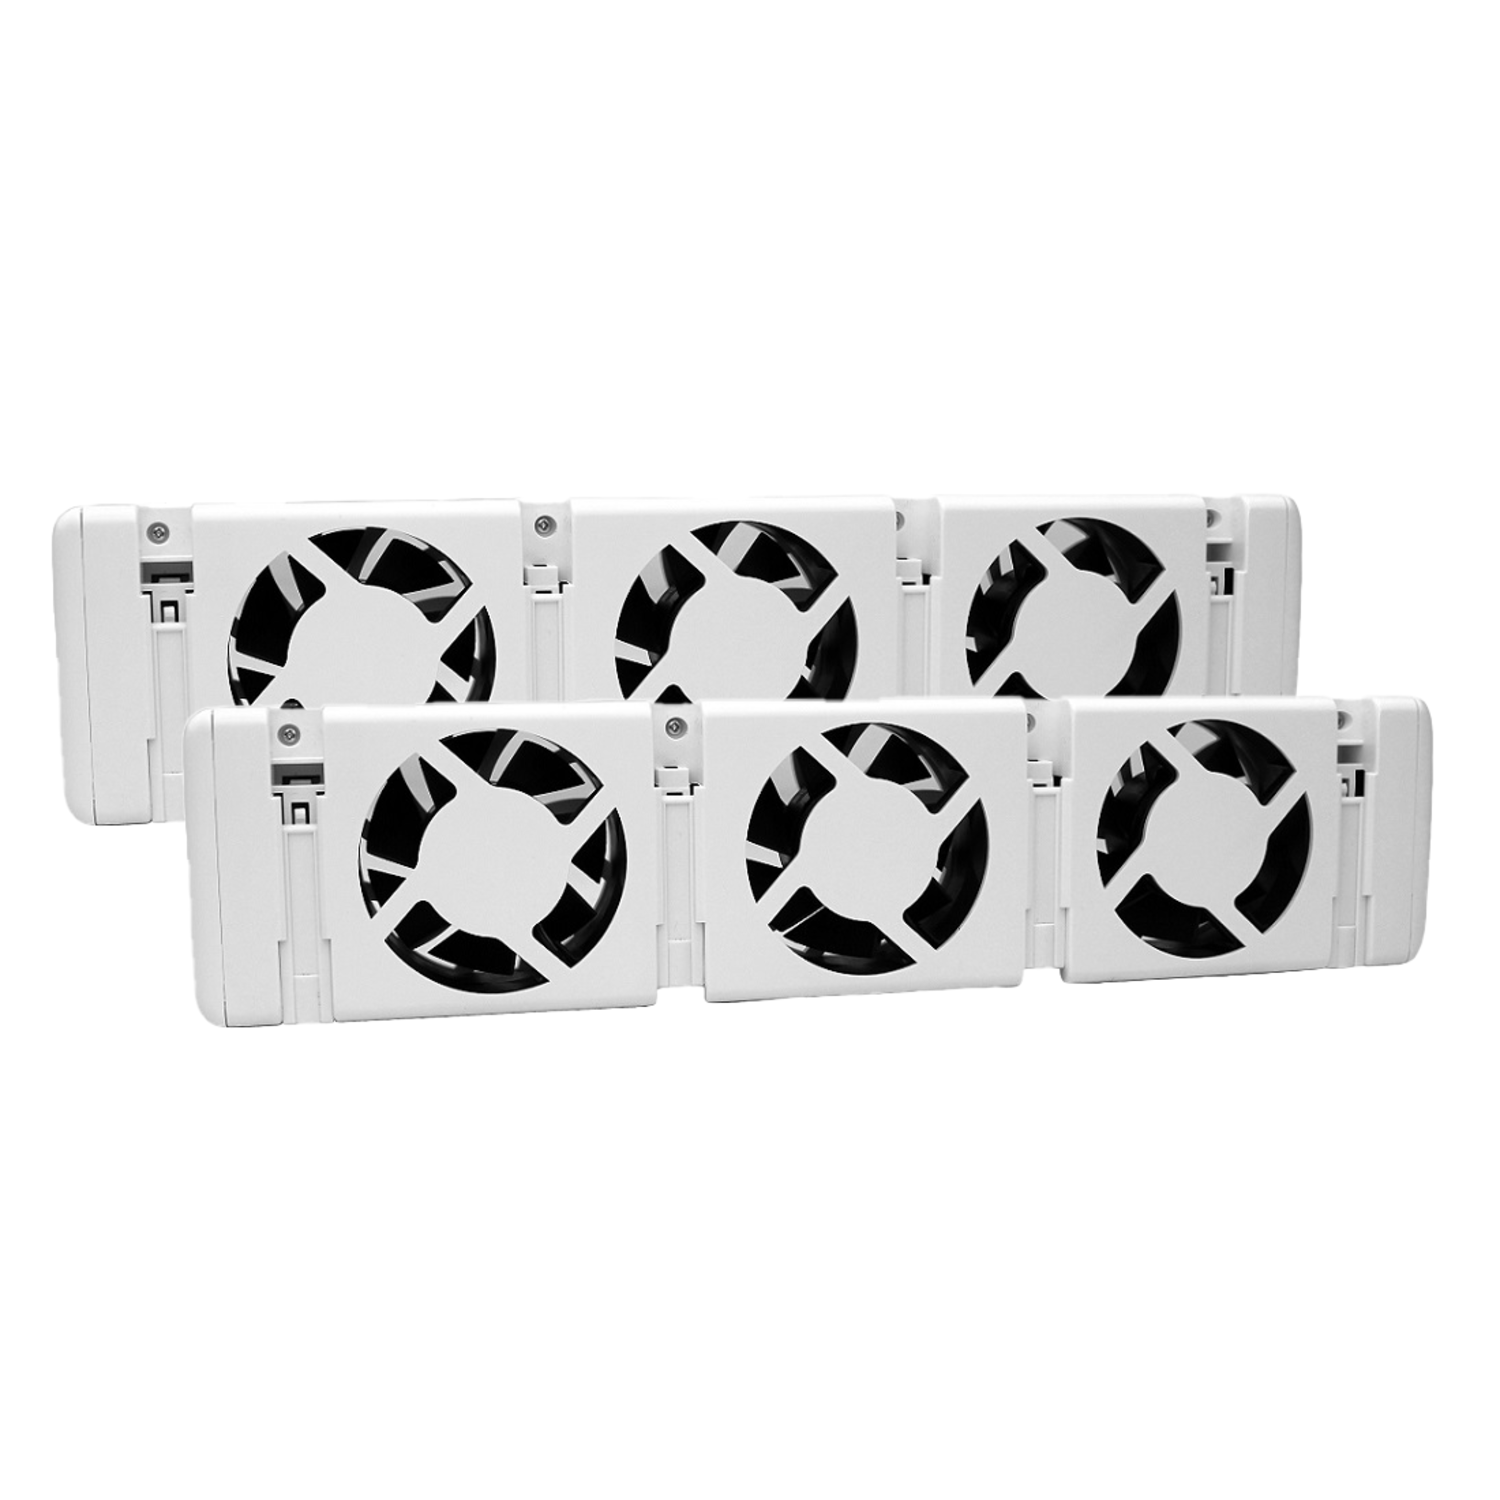 Vásárlás online 2pcs ventilátor radiátor / alumínium hűtőborda